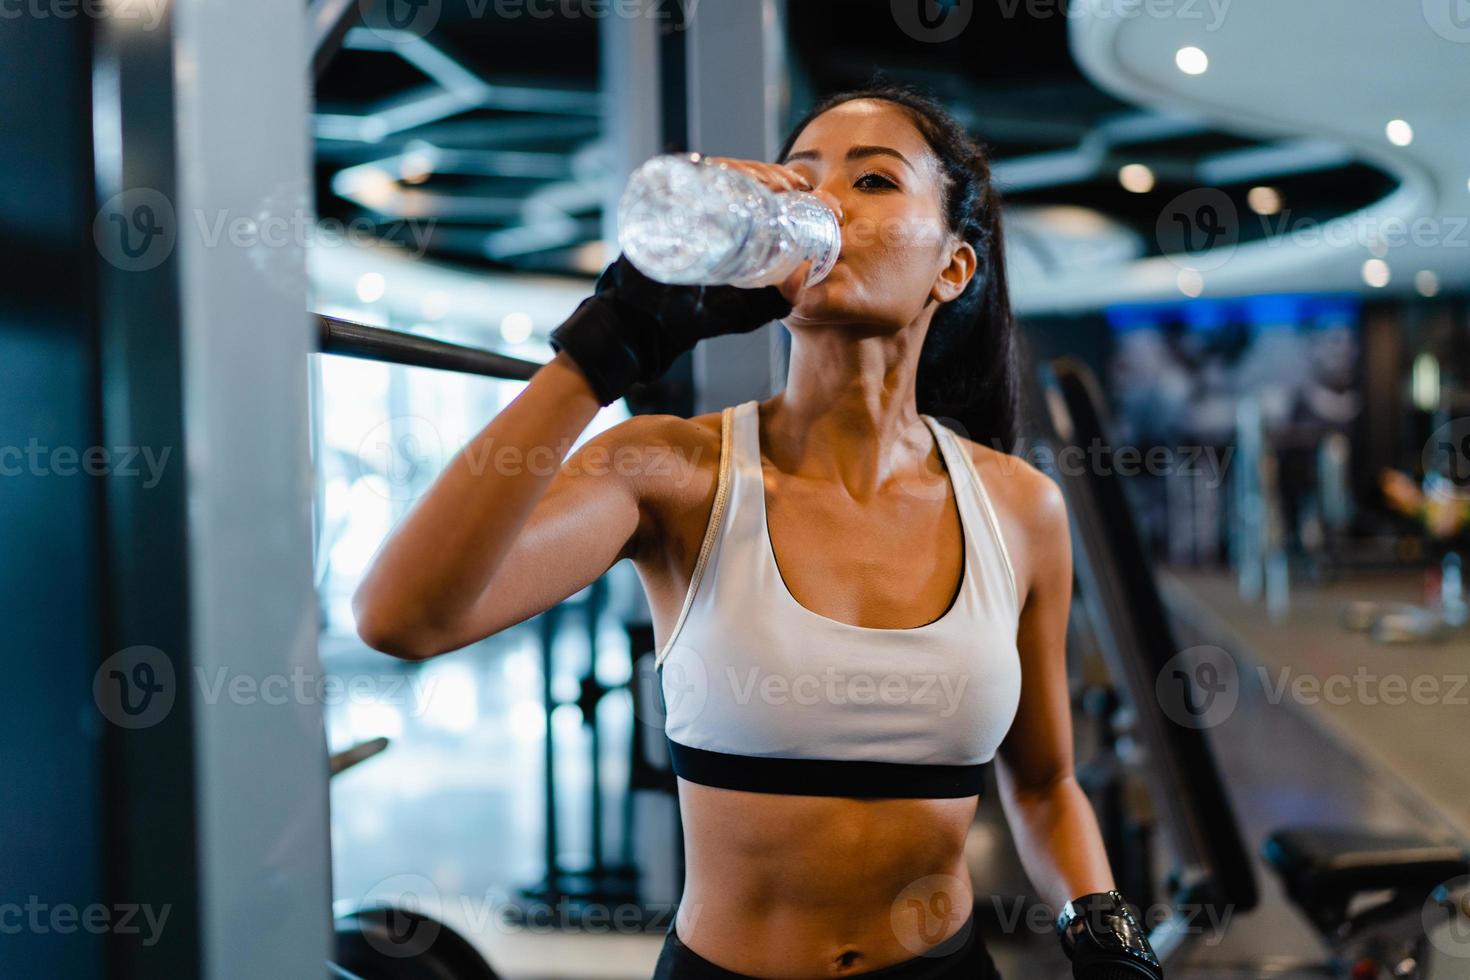 mooie jonge aziatische dame oefent drinkwater uit na vetverbrandende training in fitnessles. atleet met sixpack, sportvrouw recreatieve activiteit, functionele training, gezond levensstijlconcept. foto